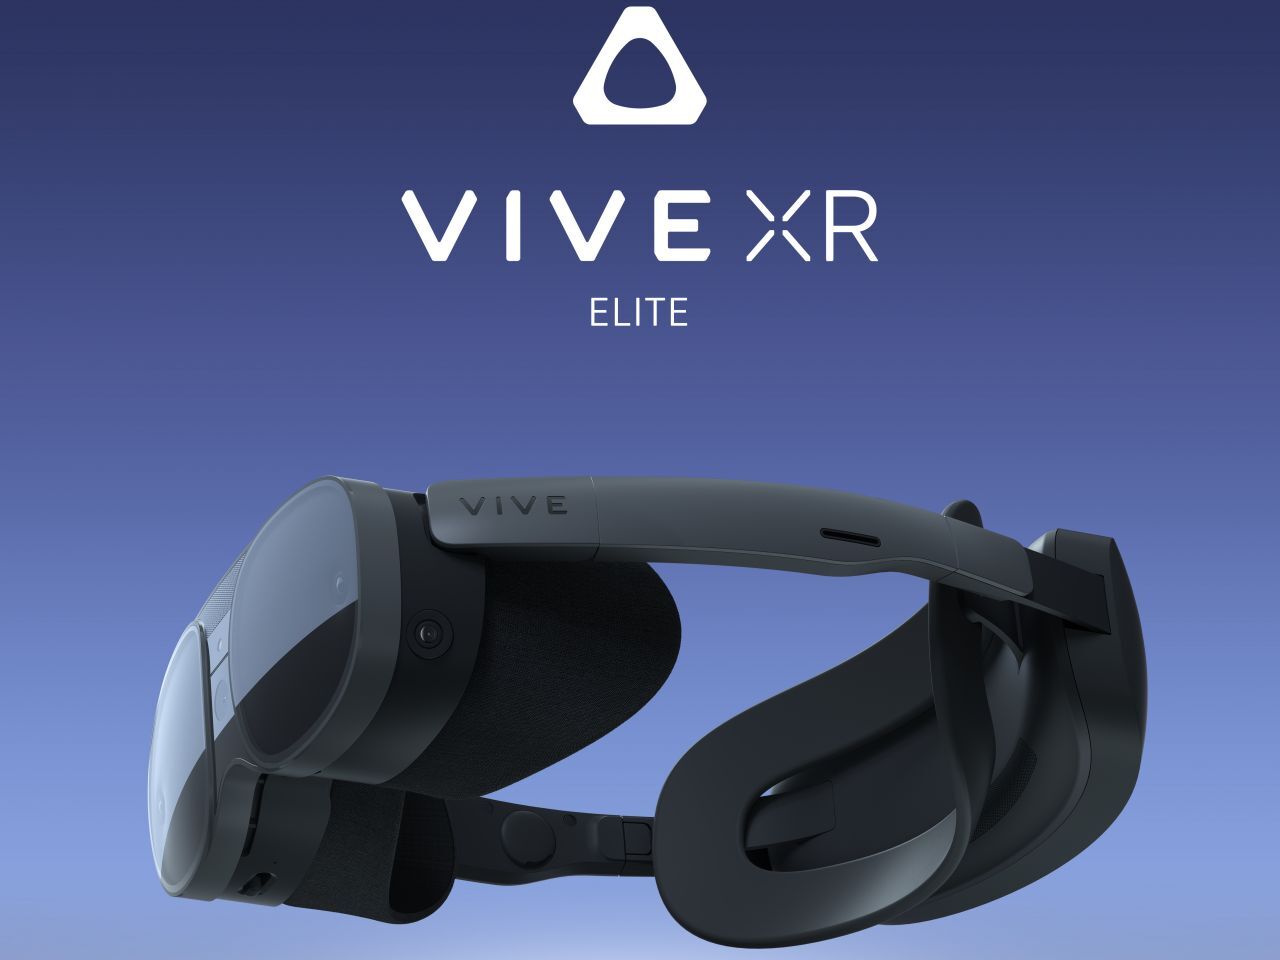 HTC、さまざまな用途に利用できる超軽量ヘッドセット「VIVE XR 